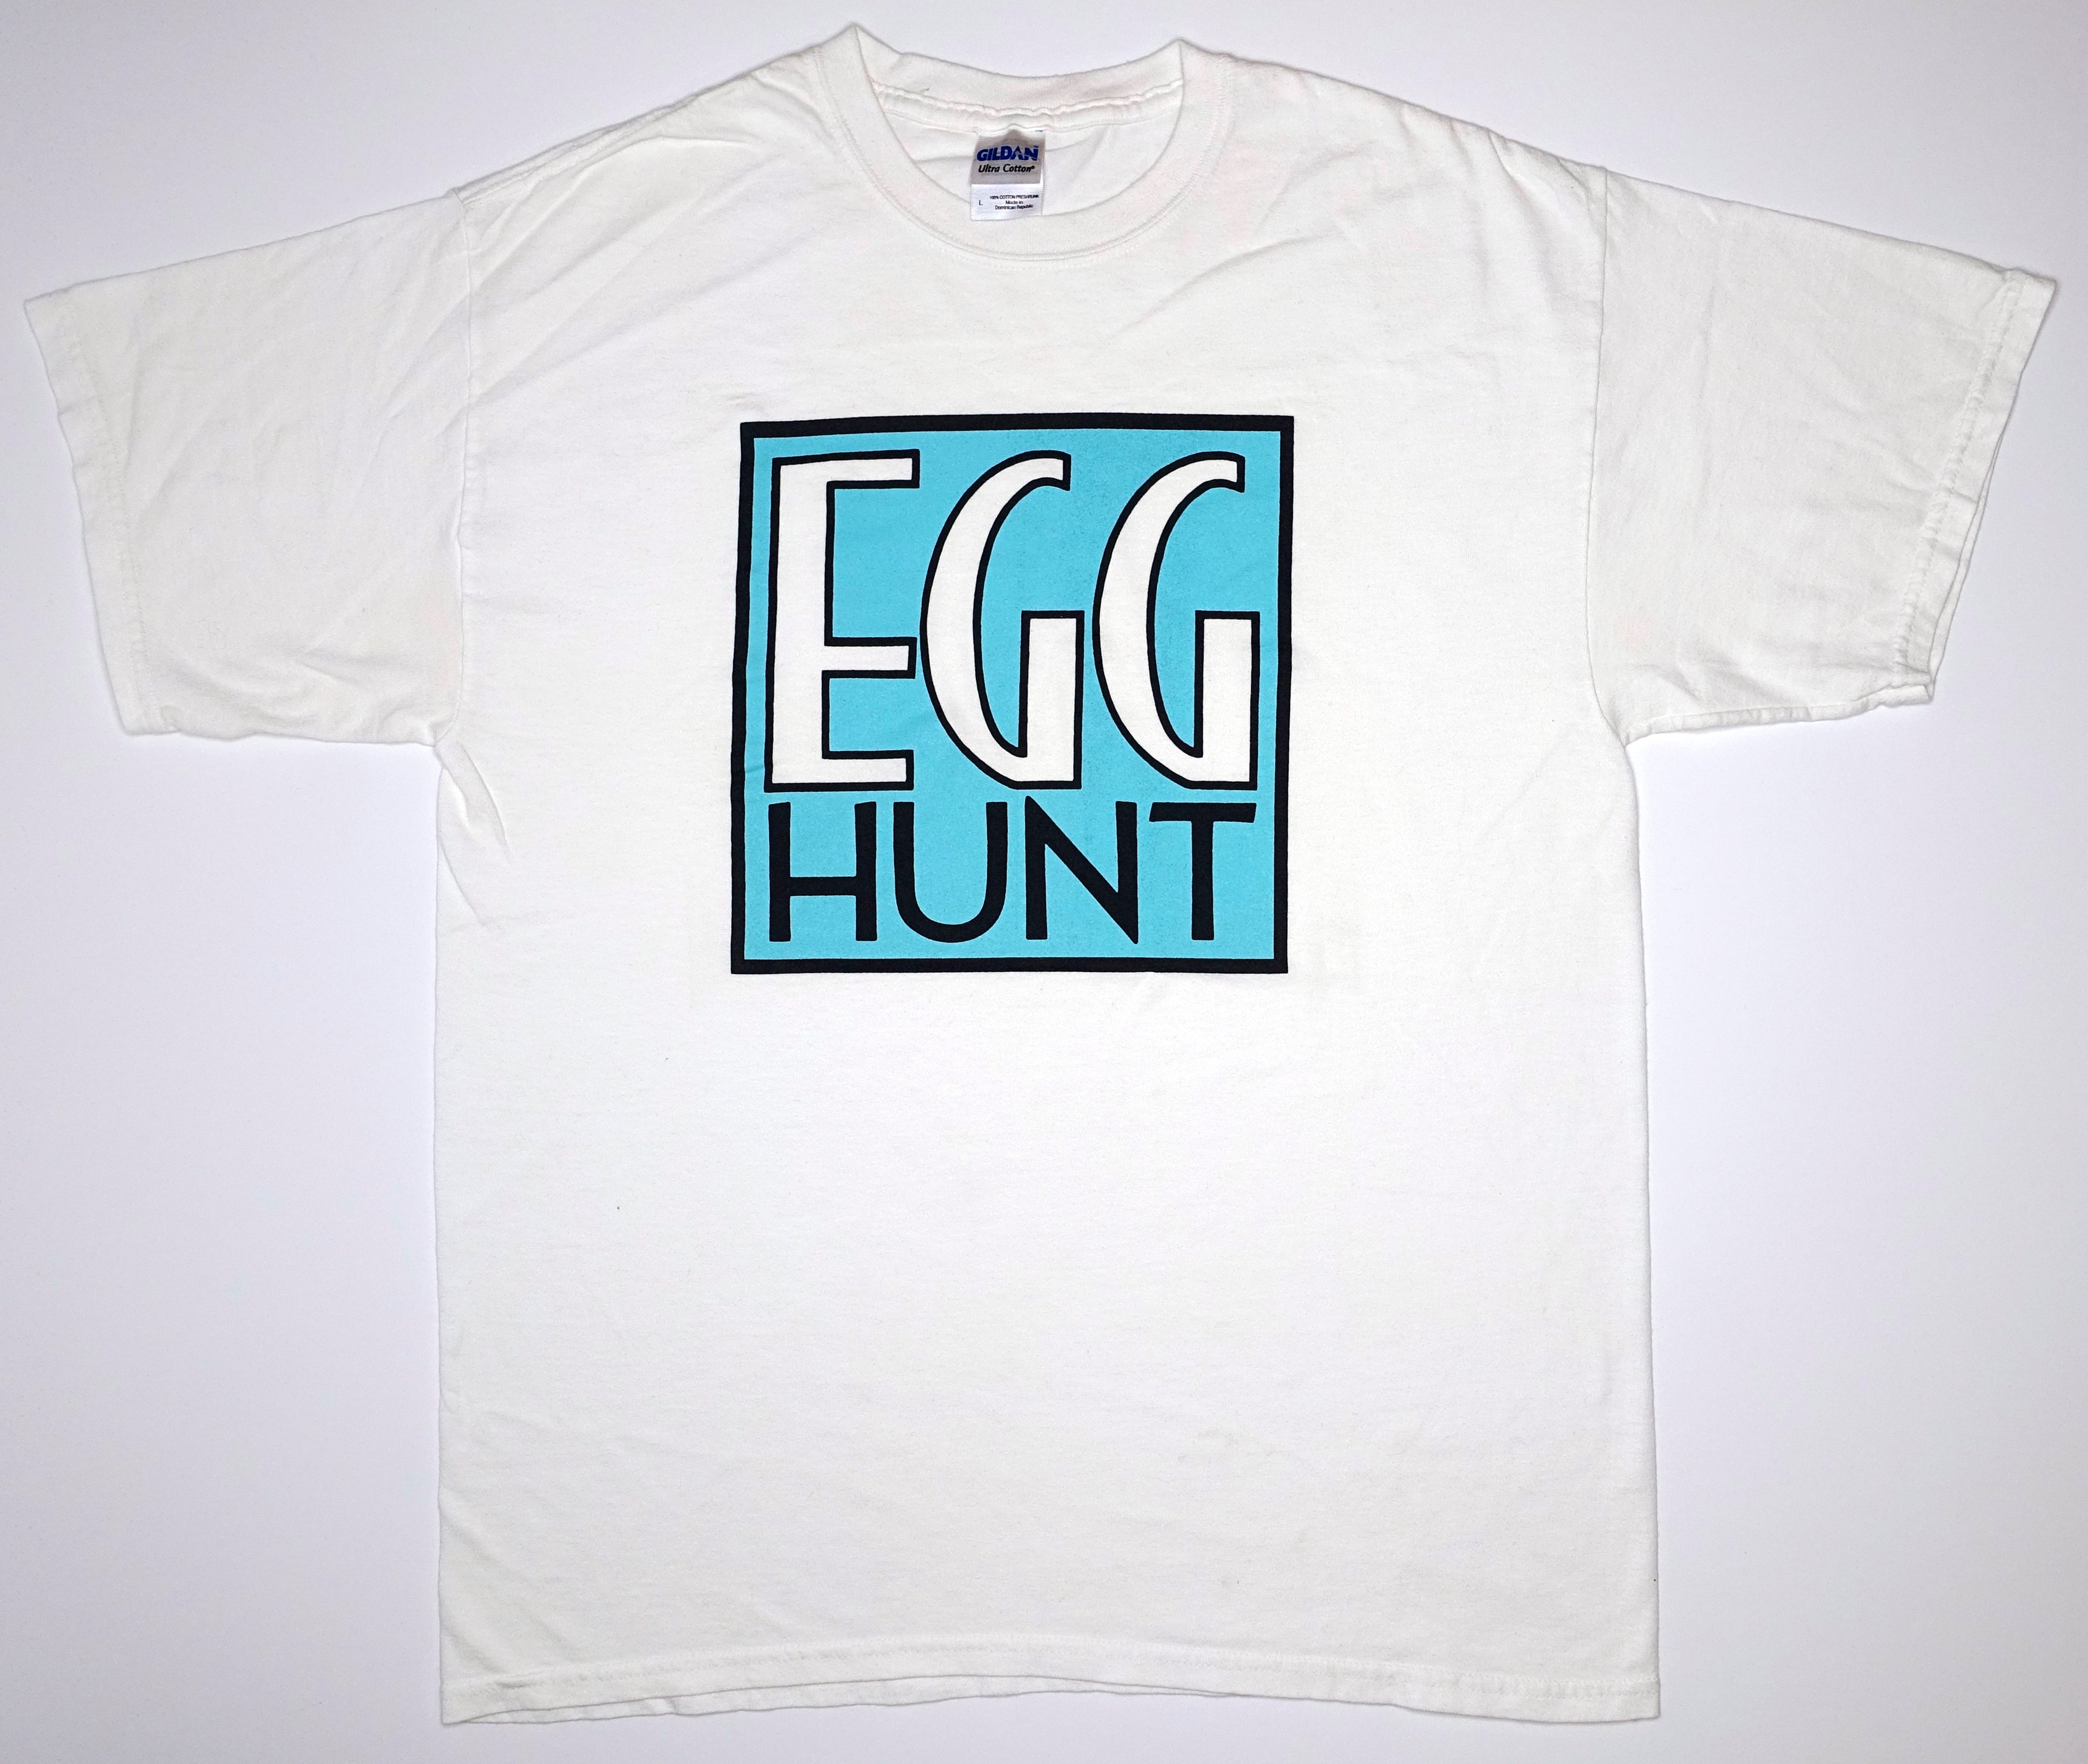 Egg Hunt - Me & You Shirt Size Large (Pedestrian Press)